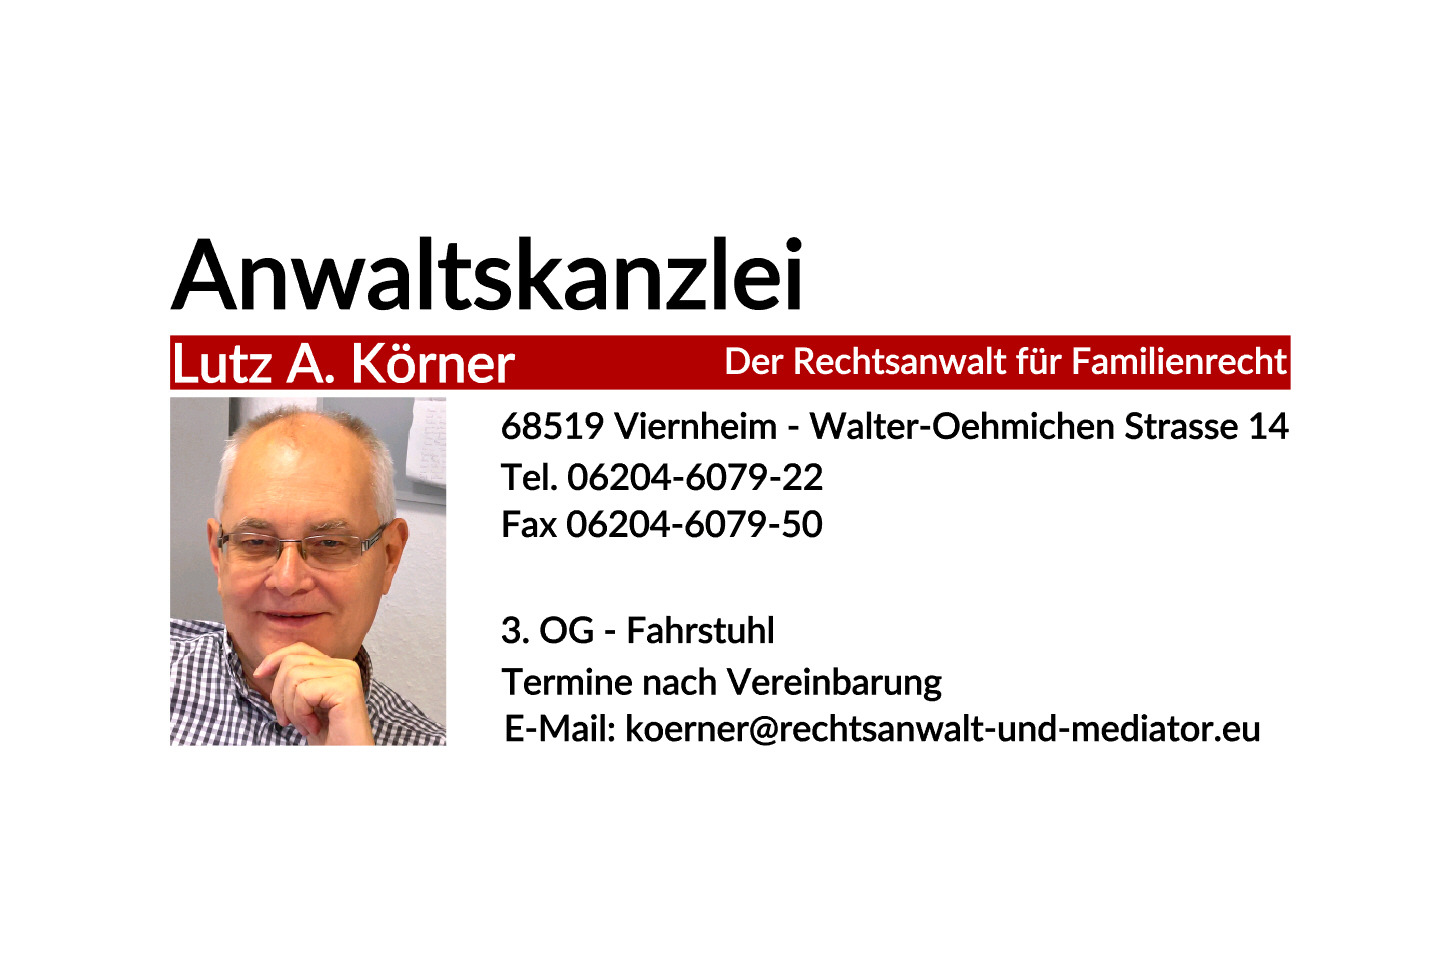 Anwaltskanzlei Lutz Körner, Walter-Oehmichen-Straße 14 in Viernheim